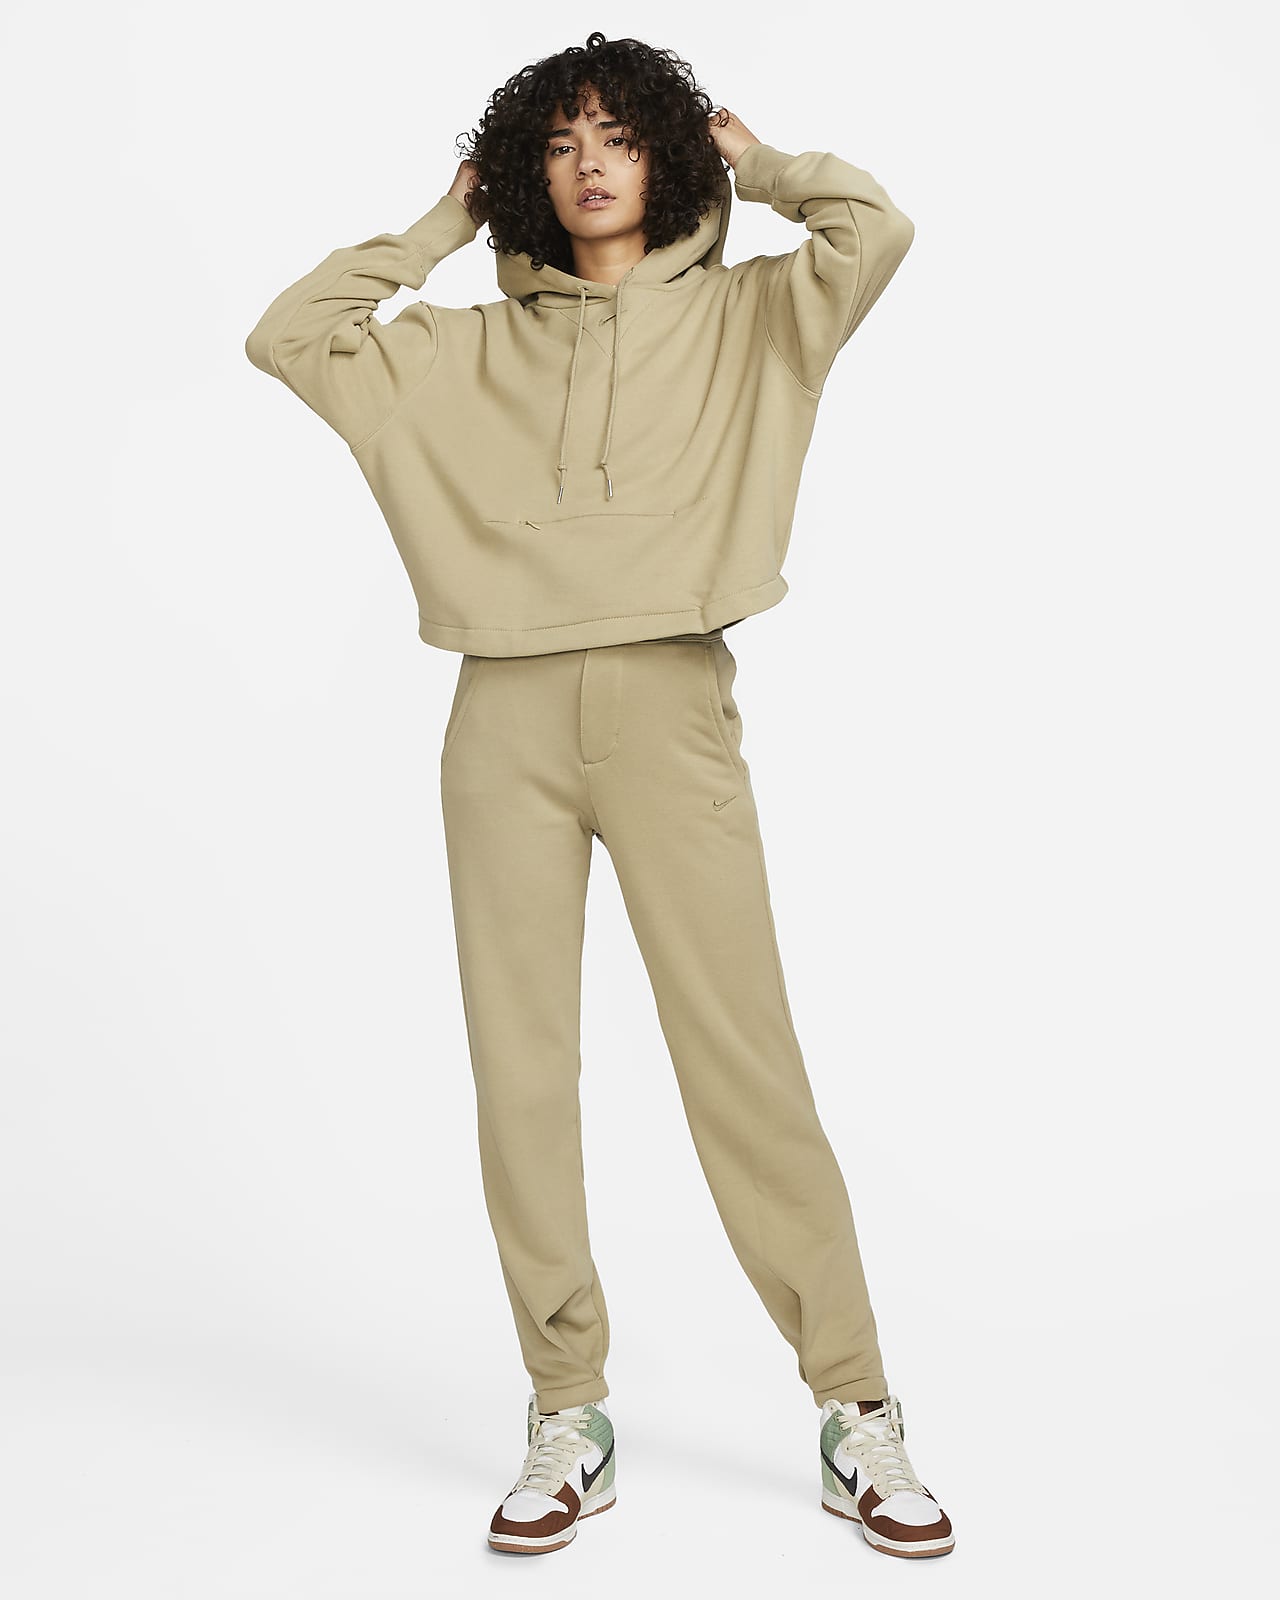 Nike Sportswear Modern Fleece Women's Oversized French Terry Crew-Neck  Sweatshirt